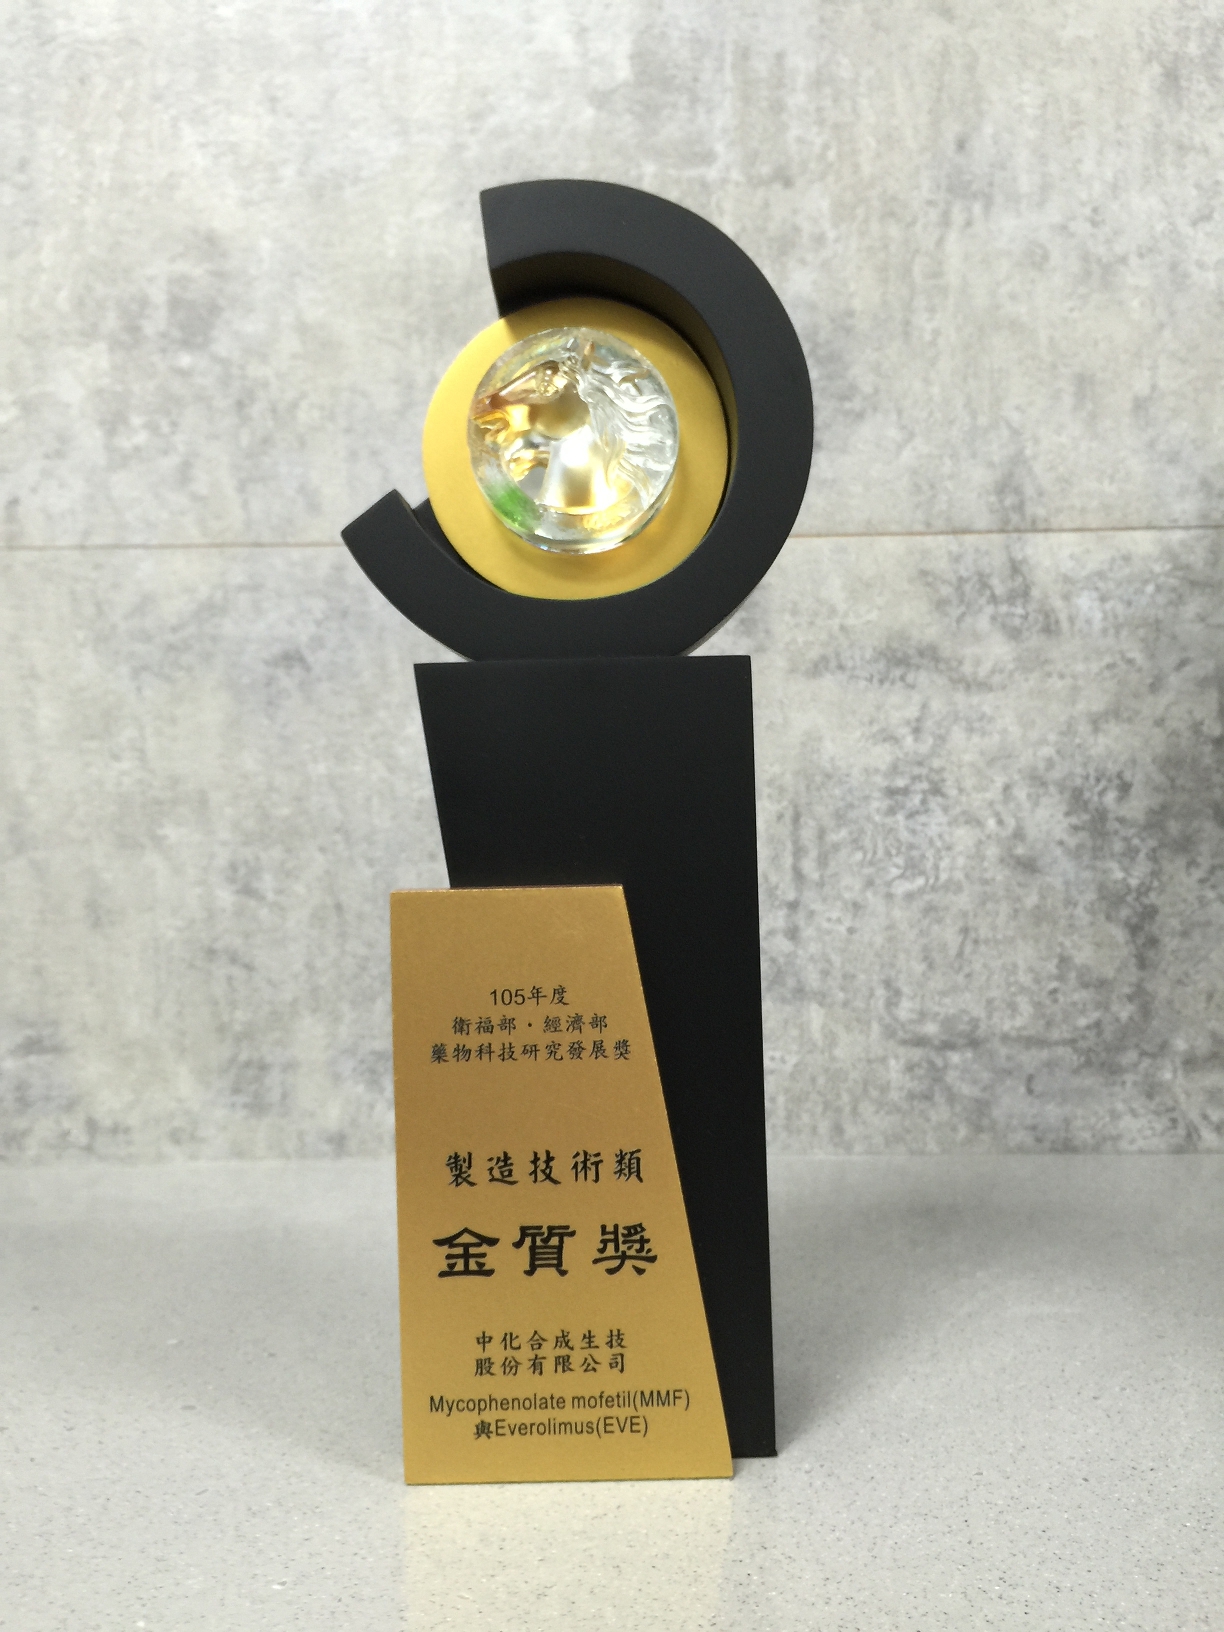 2016衛福部經濟部製造技術類金質獎